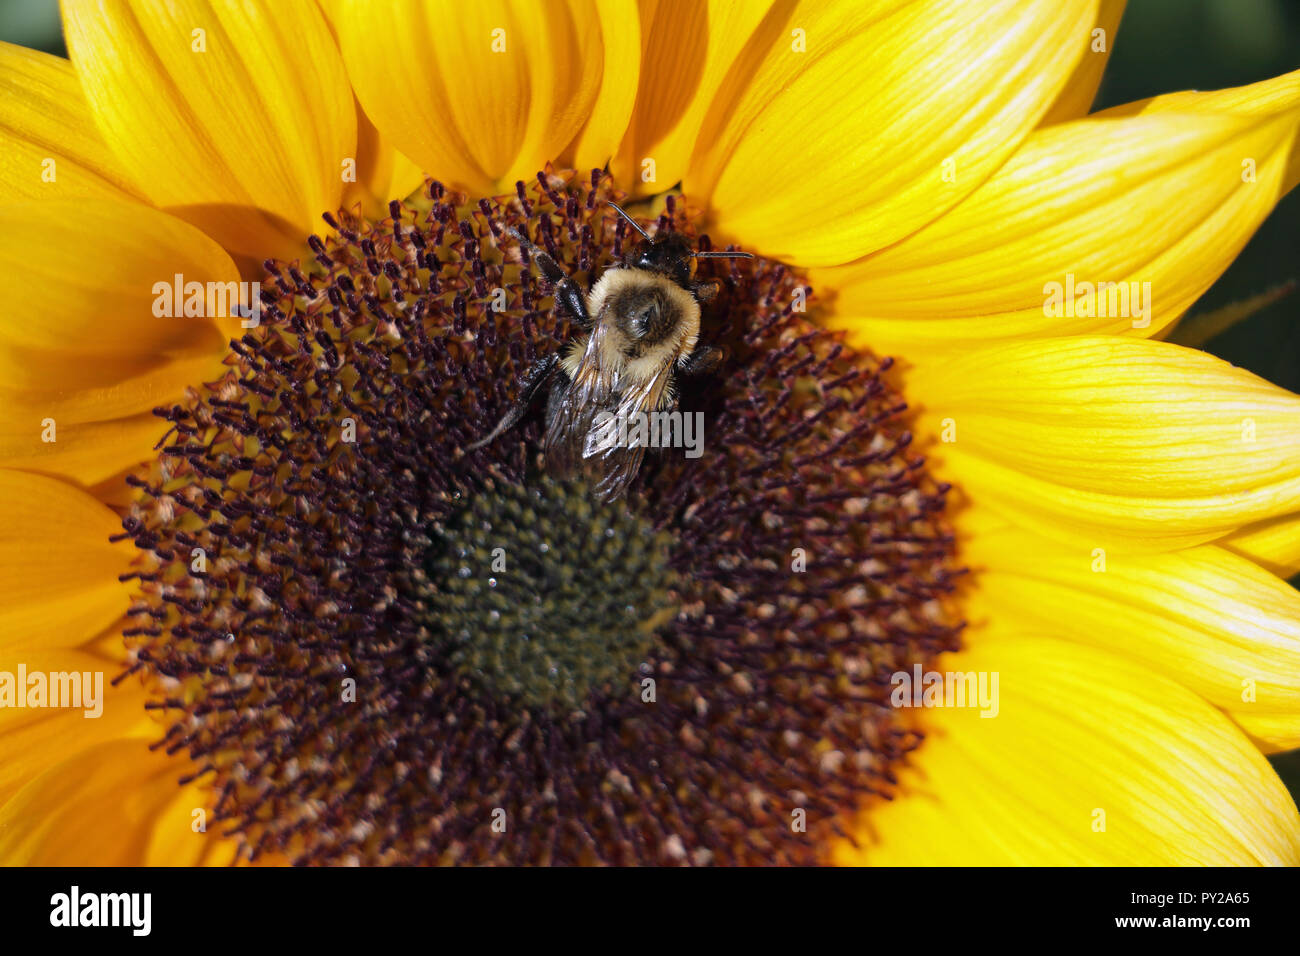 Bumblebee on Sunflower Stock Photo